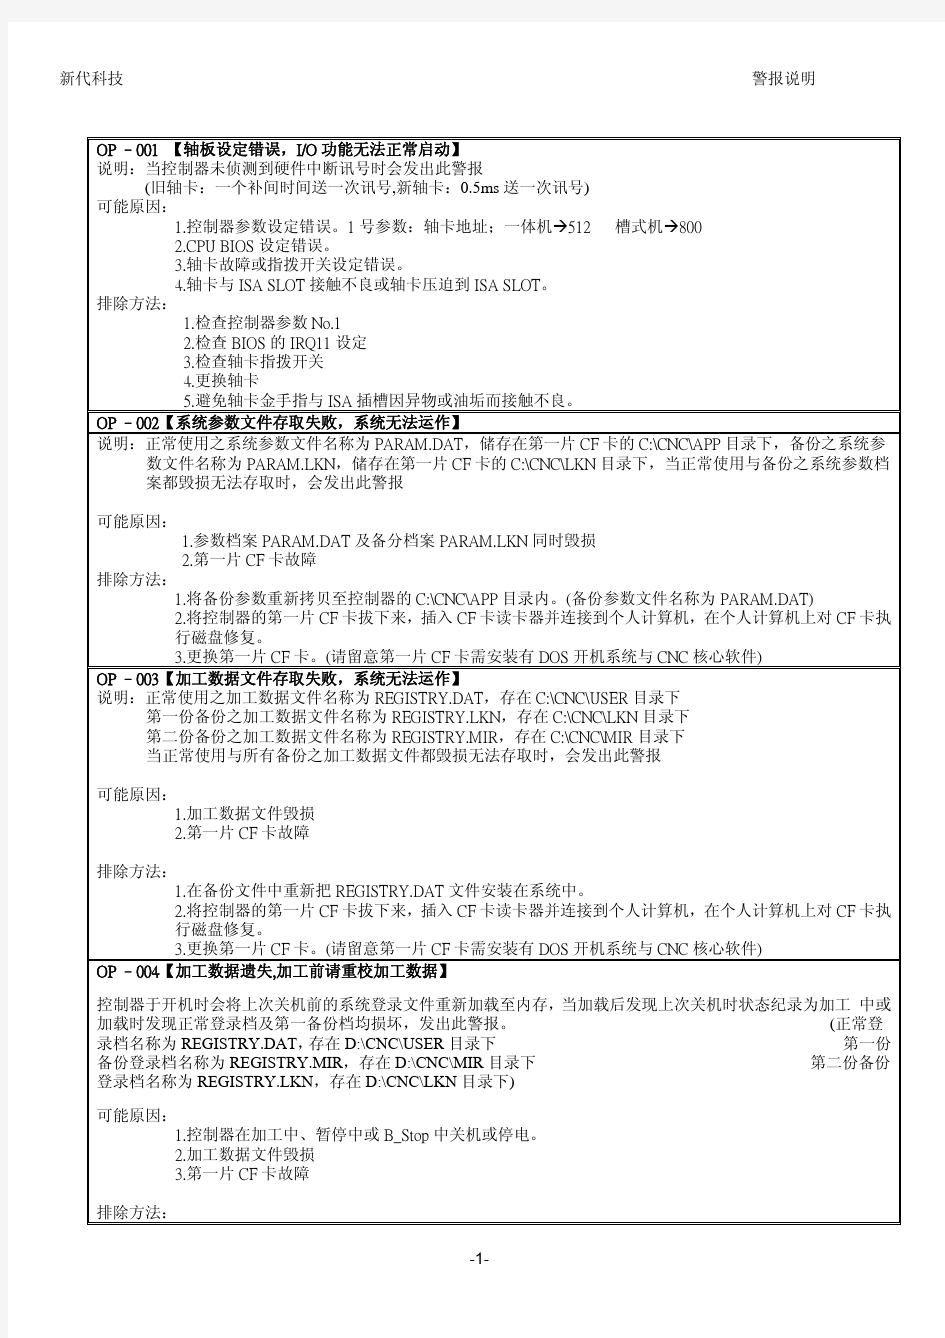 台湾新代数控系统新代控制器警报说明文件V2.2